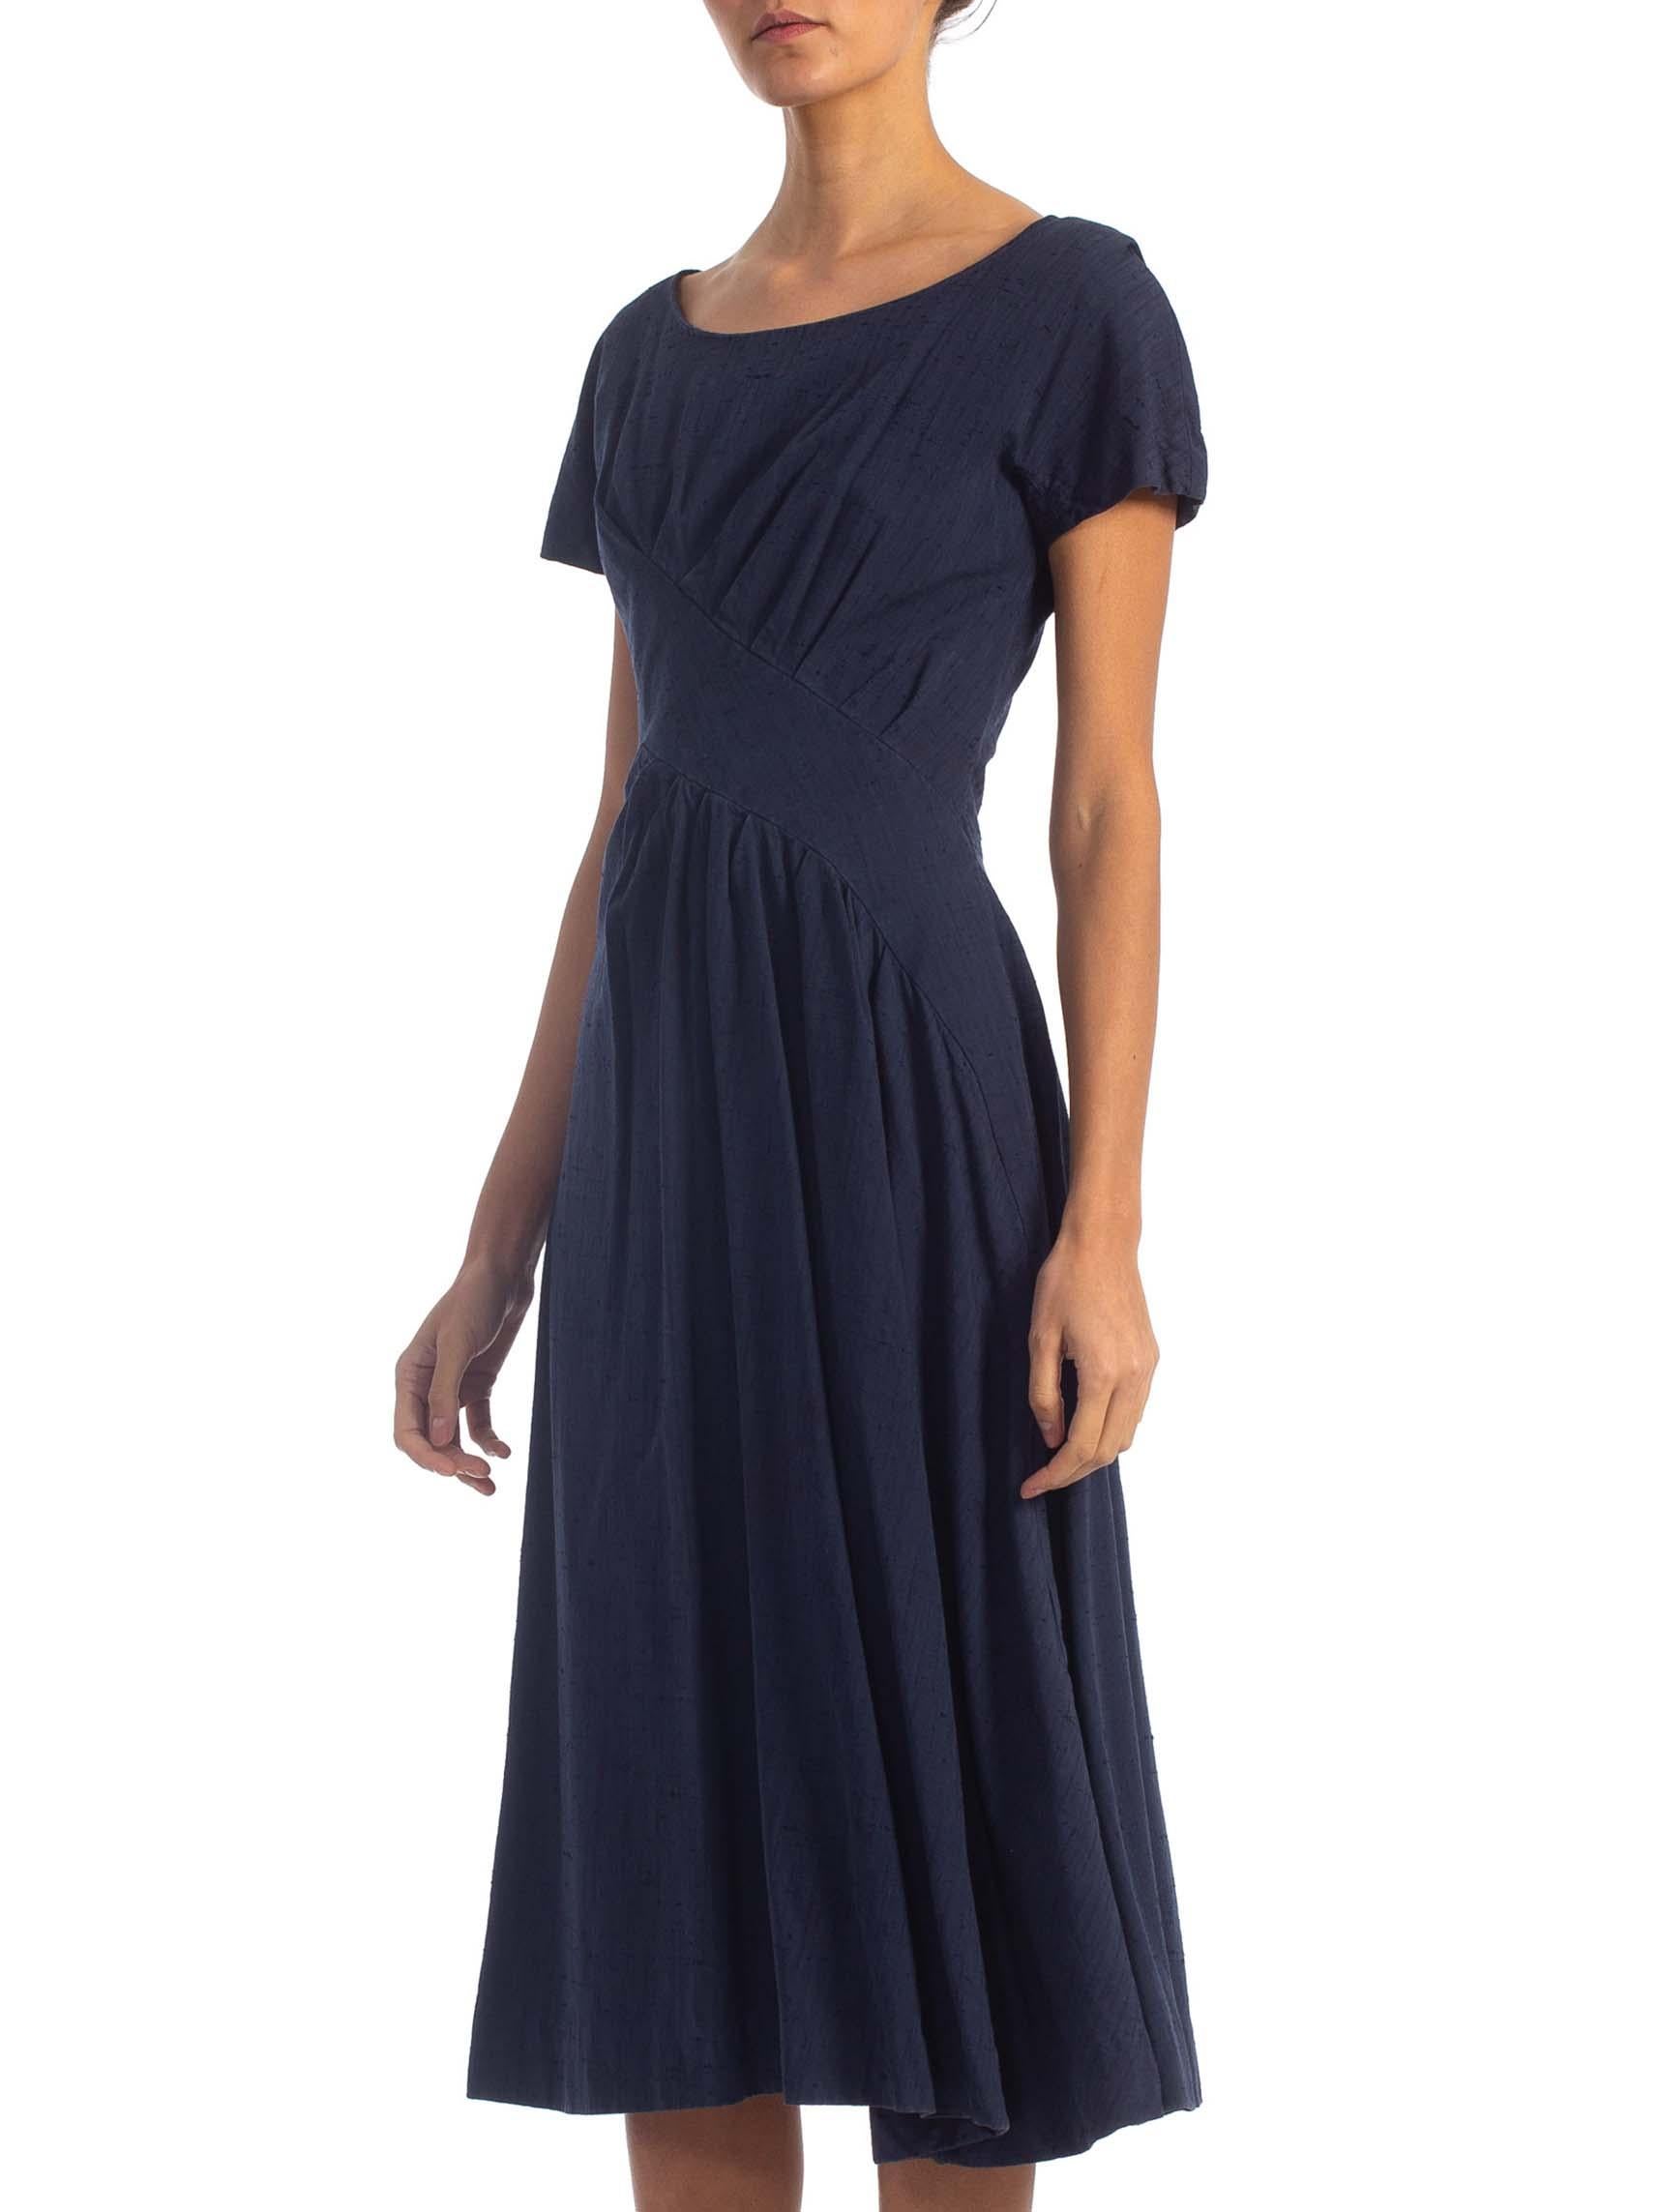 Black 1950S SUZY PERETTE Navy Blue Cotton Blend Asymmetrical Drape Fit & Flare Dress